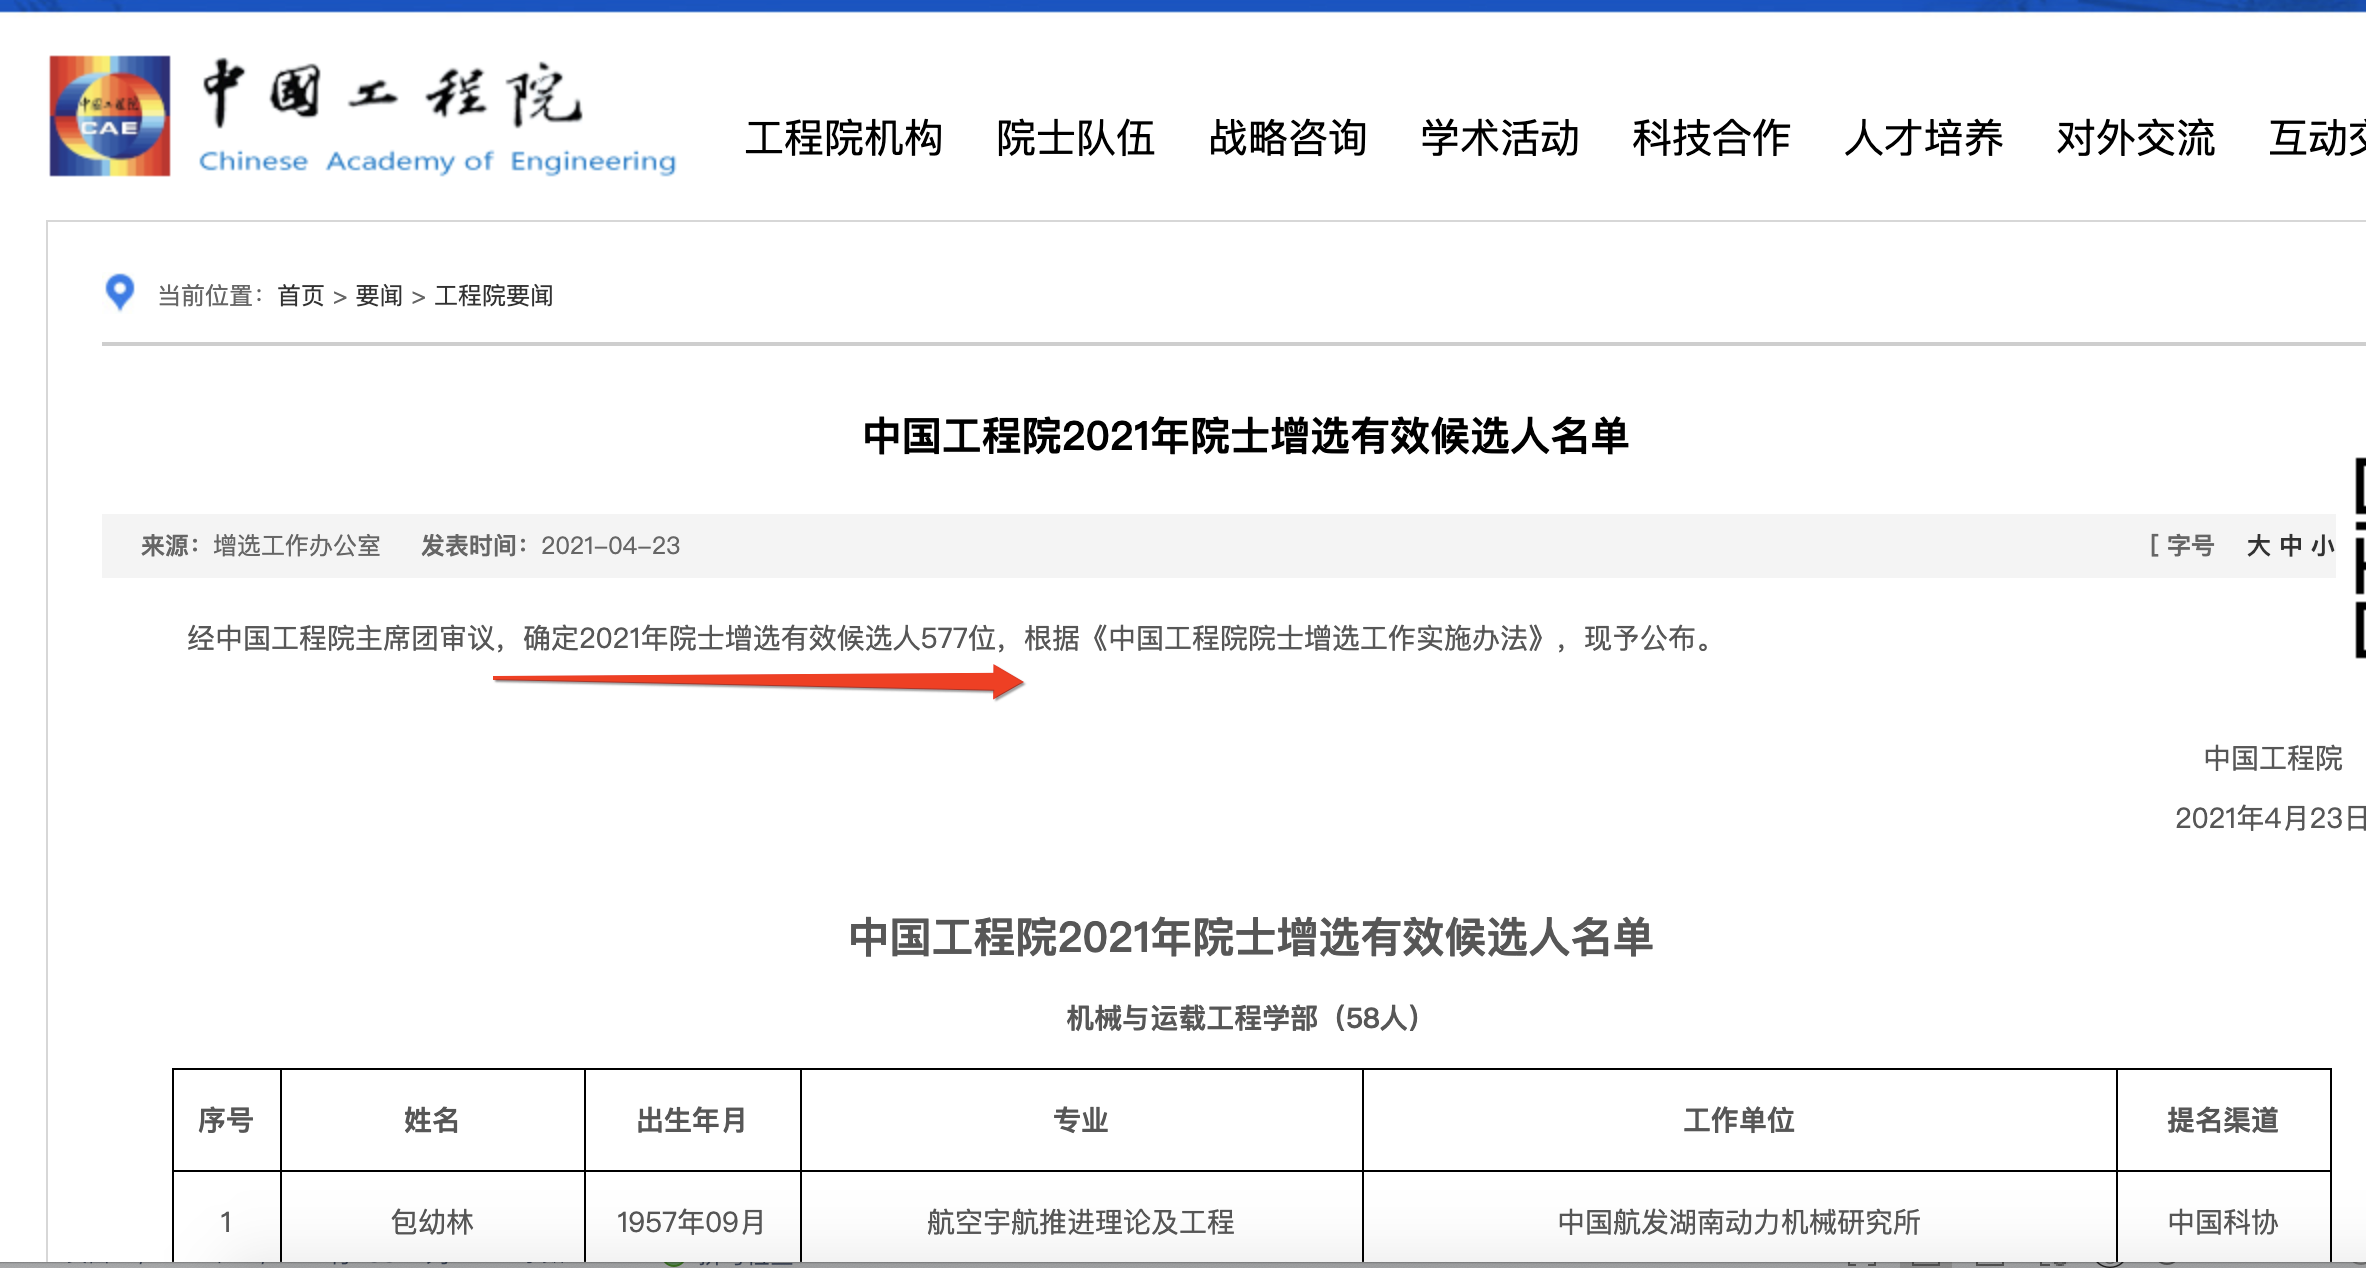 中国工程院2021<font color="red">年</font>院士增选577位有效候选人名单公布，其中医药卫生部84位有效候选人